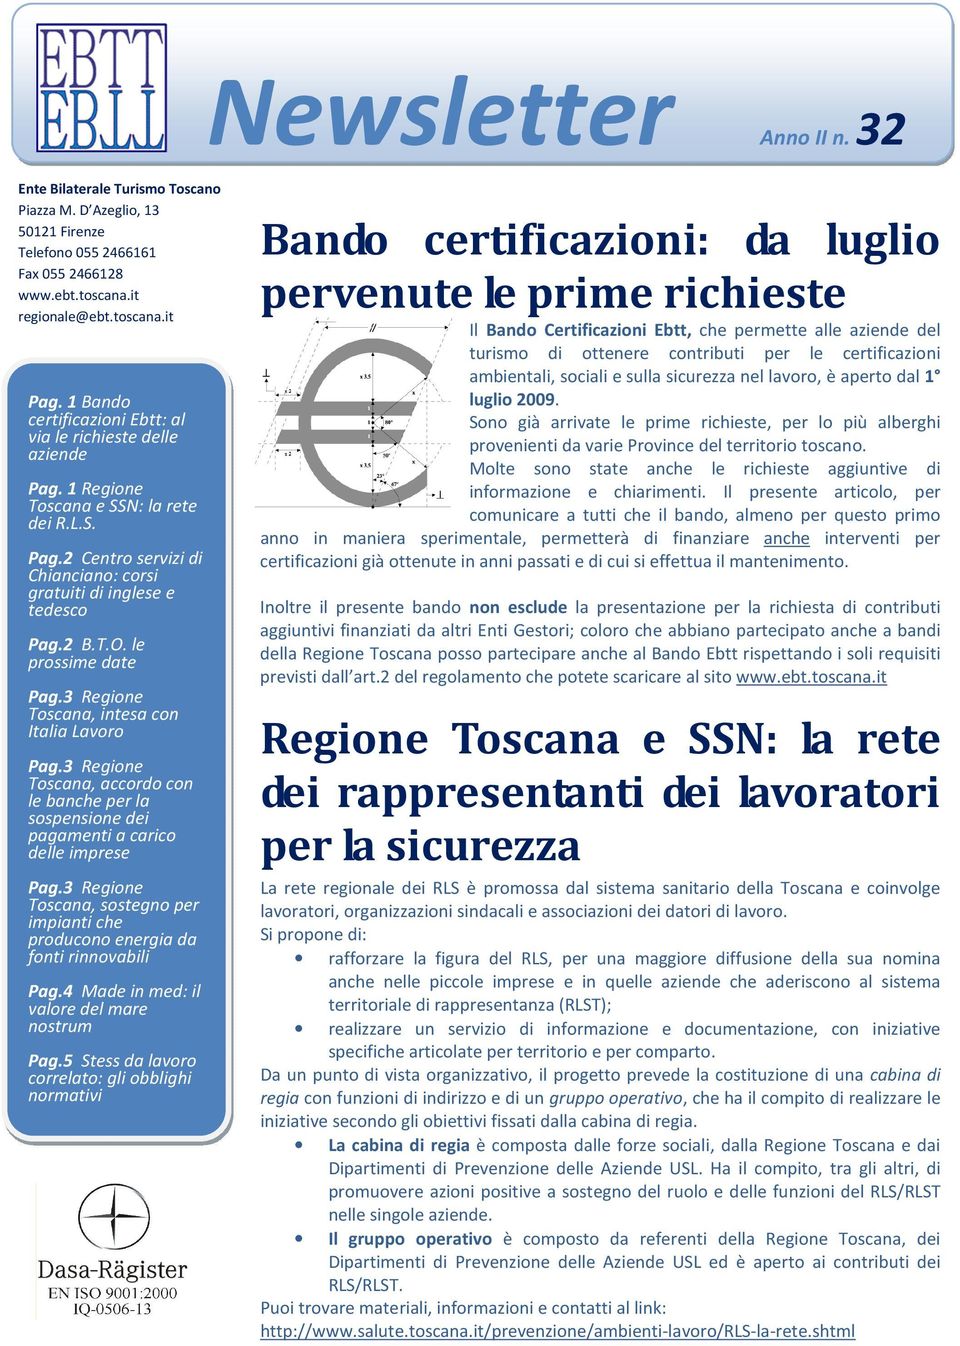 le prossime date Pag.3 Regione Toscana, intesa con Italia Lavoro Pag.3 Regione Toscana, accordo con le banche per la sospensione dei pagamenti a carico delle imprese Pag.